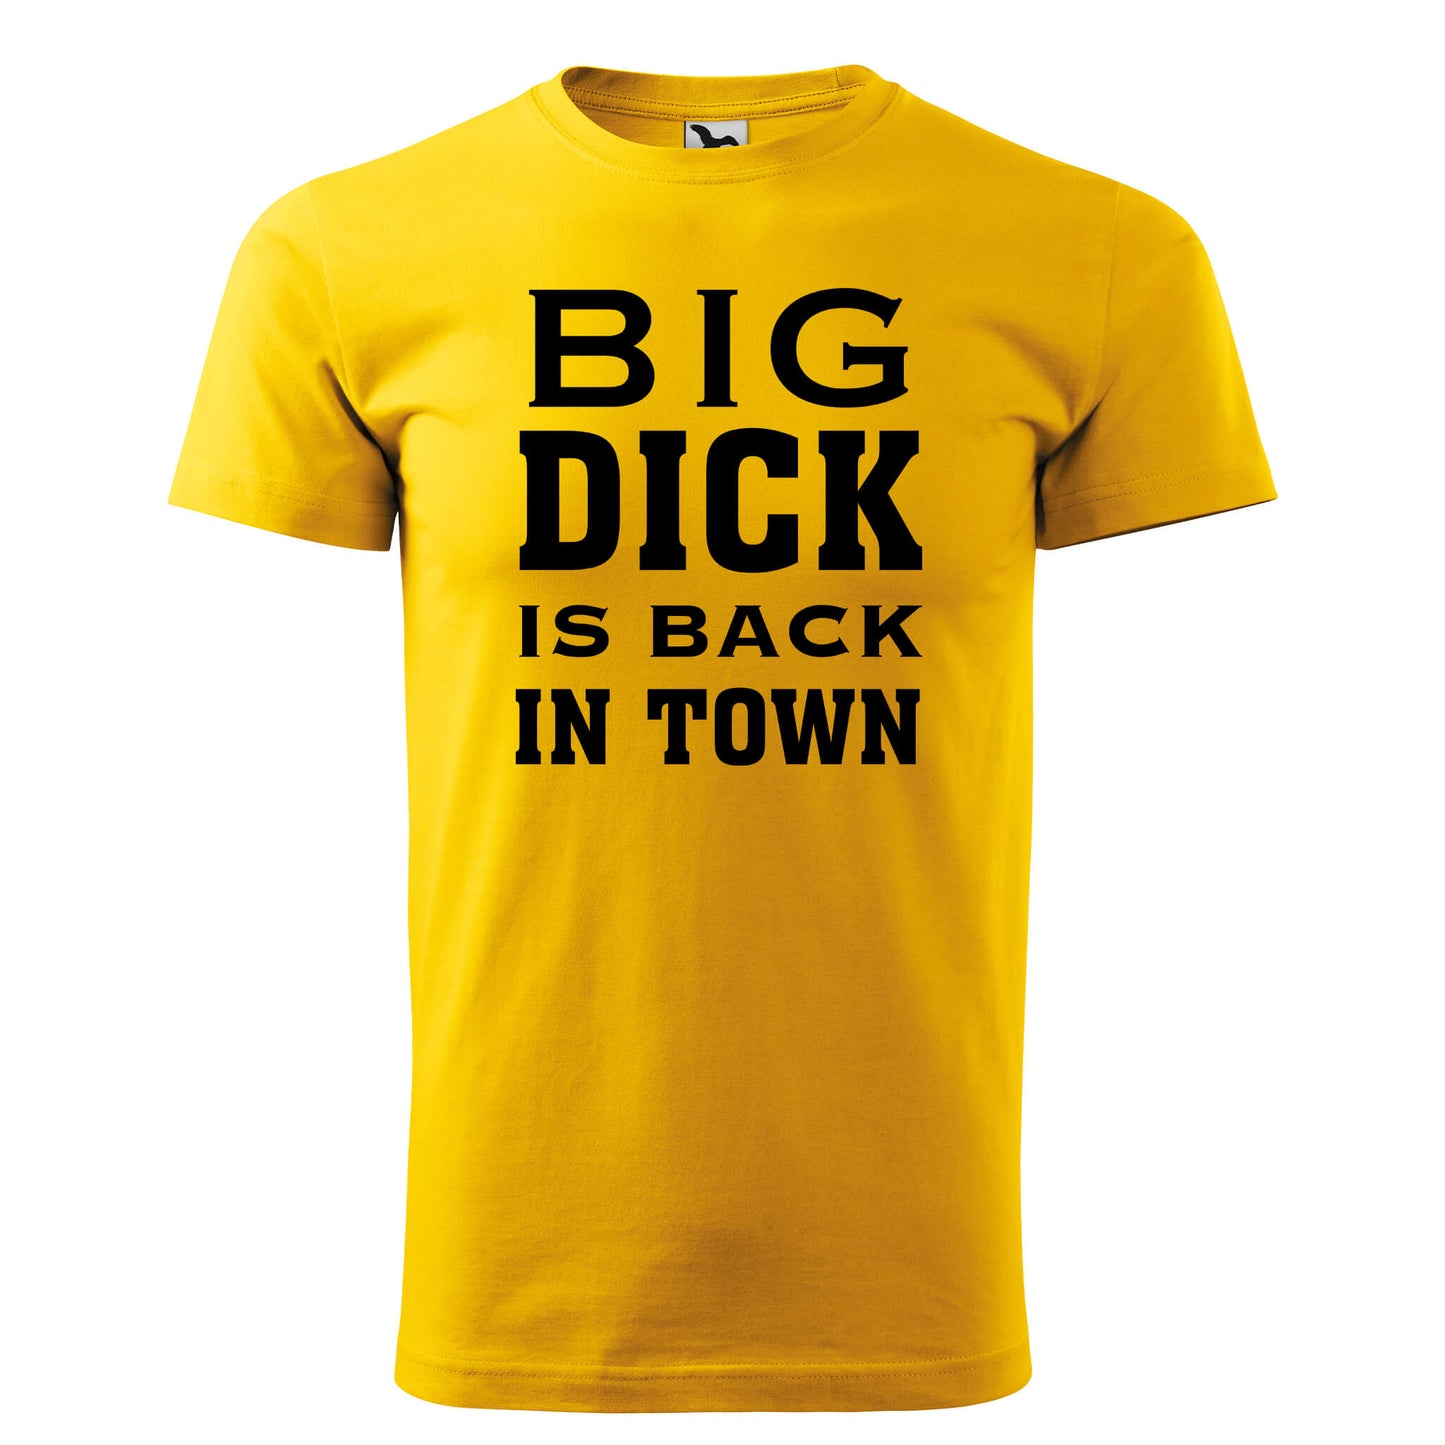 Camiseta - Big dick está de vuelta en la ciudad